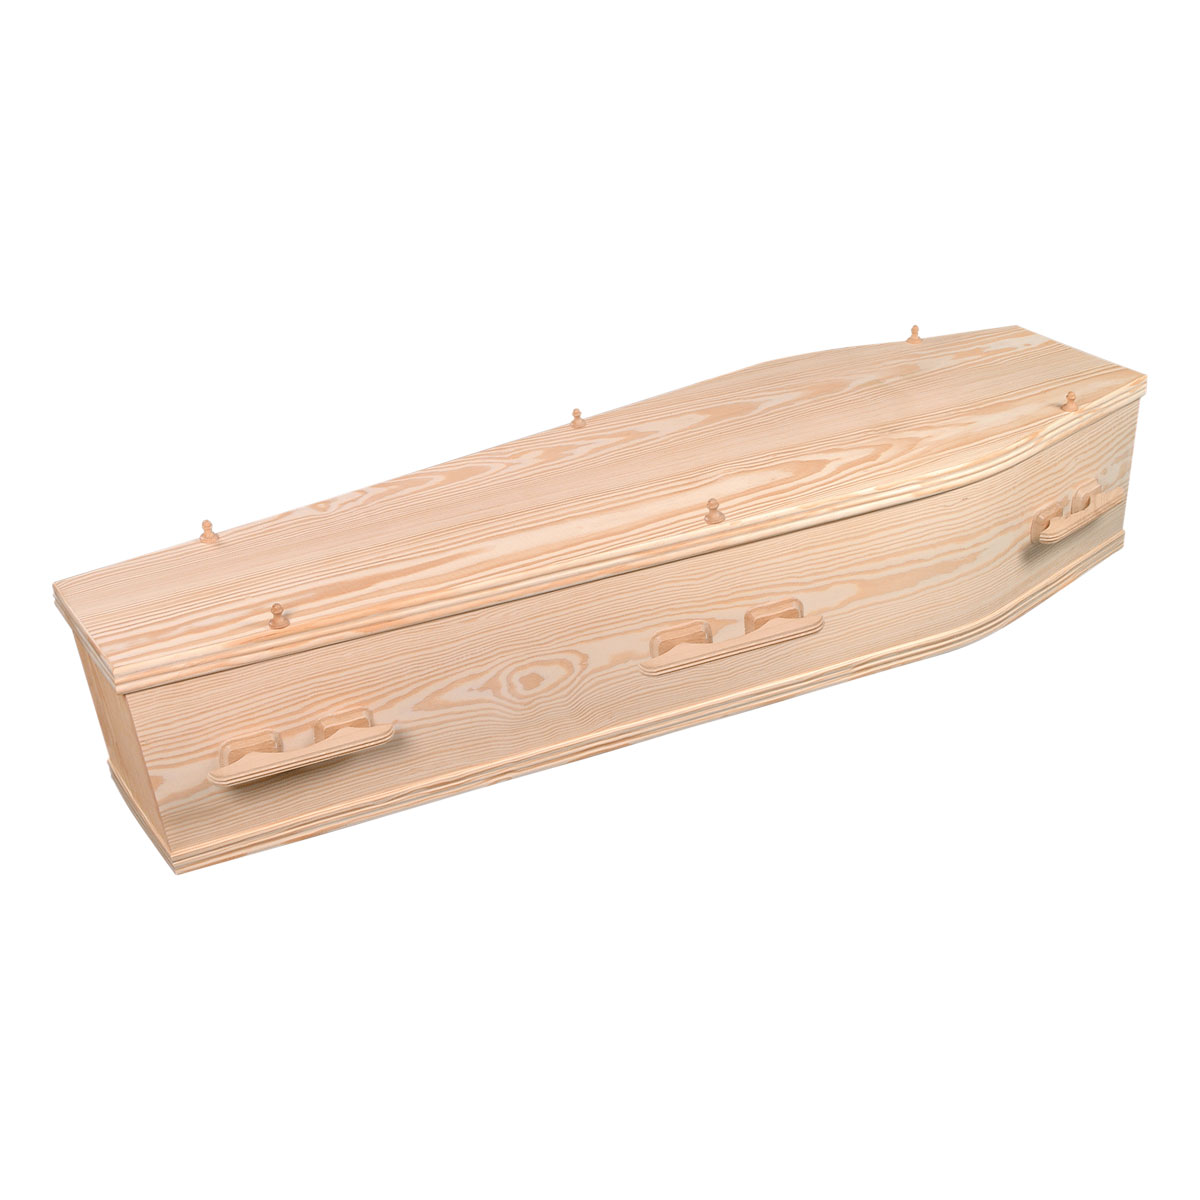 Woodland coffins